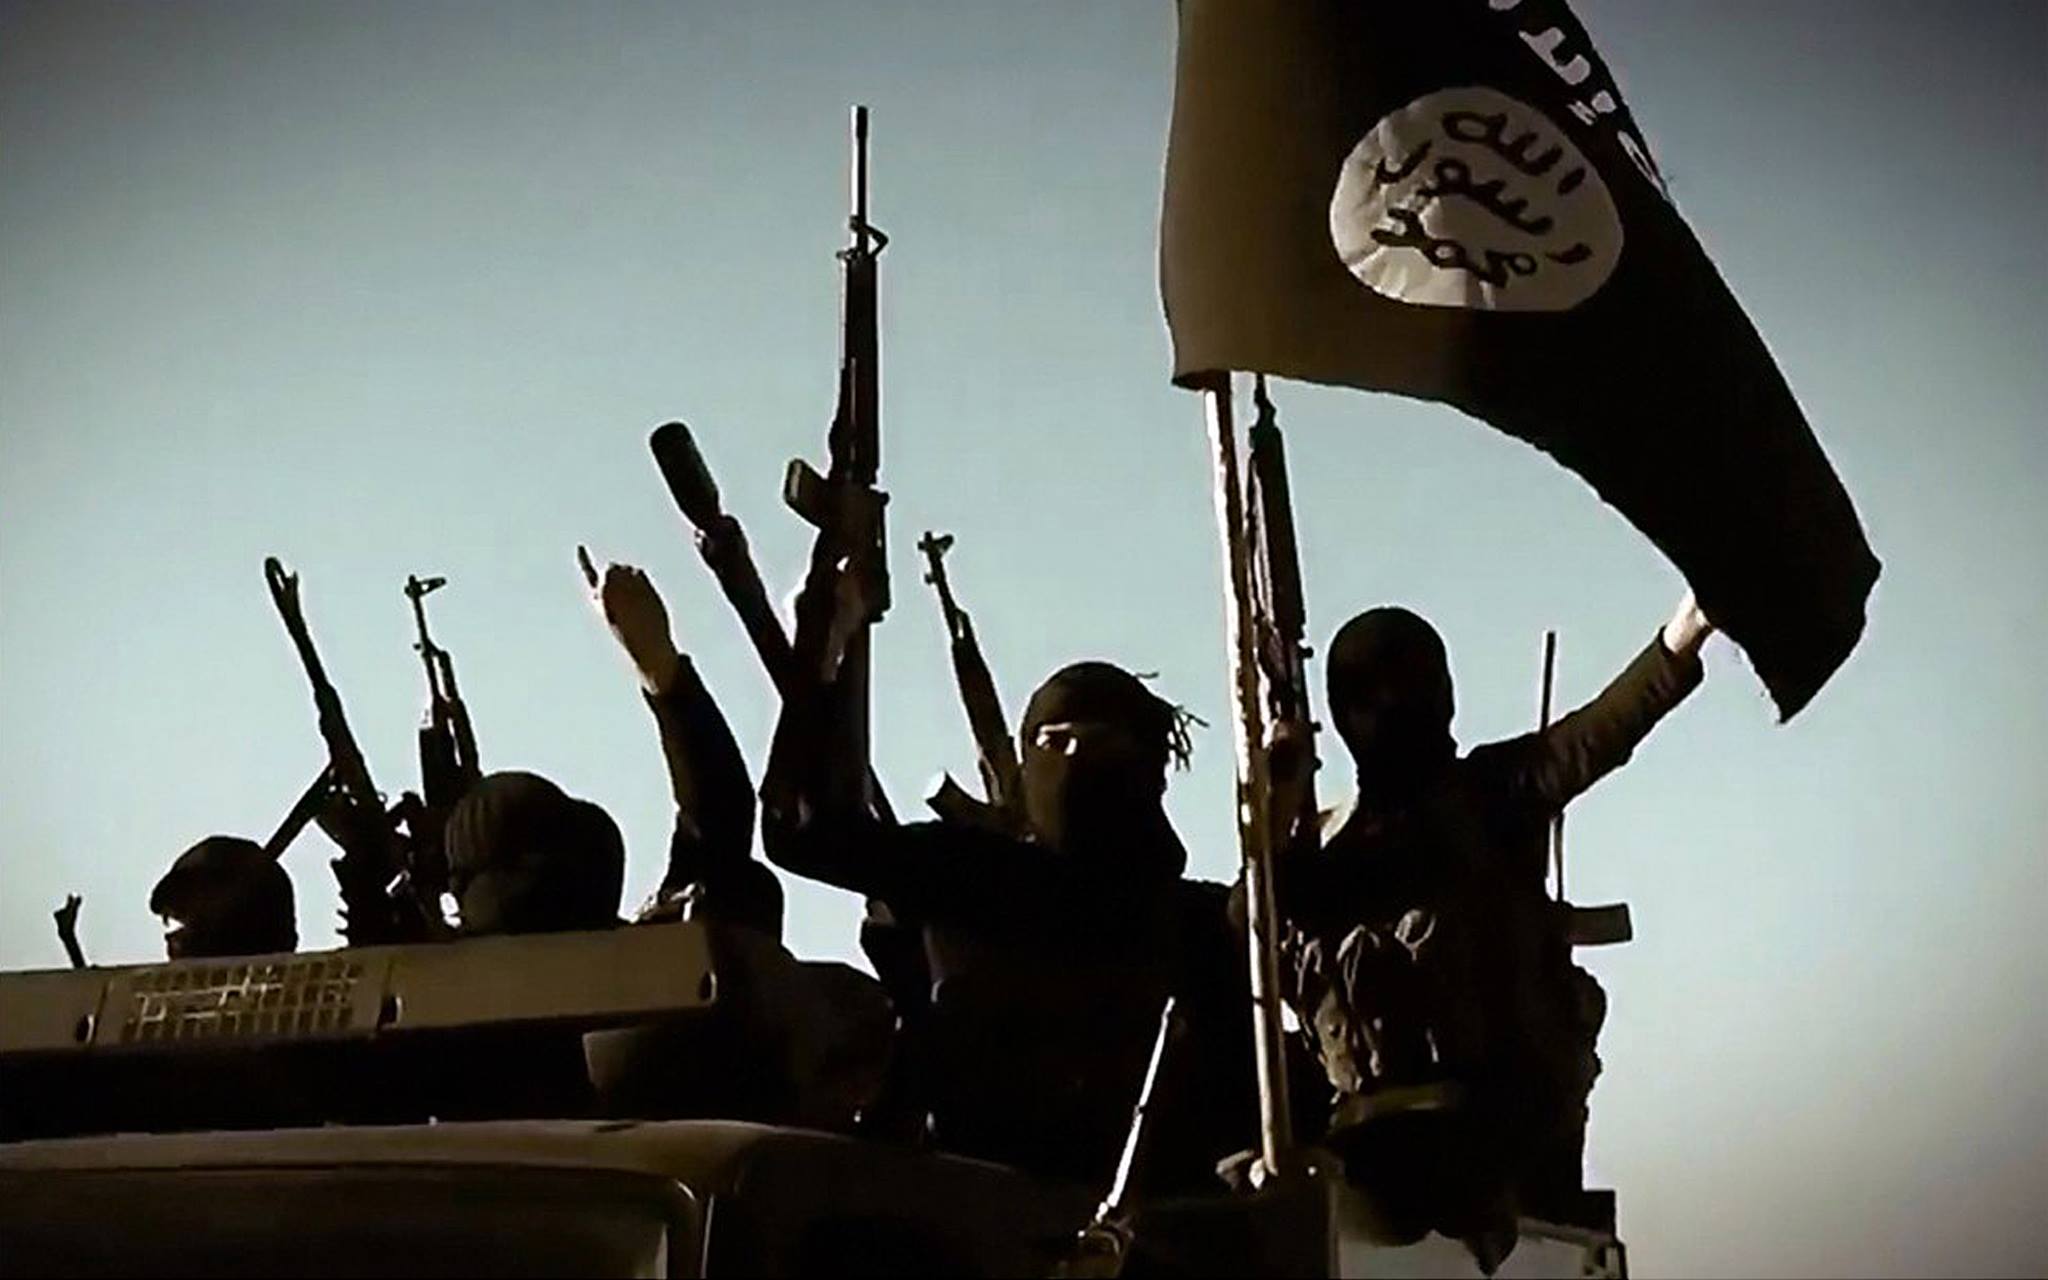 "ИГИЛ потеряло много земли в Ираке и Сирии, но это не конец", - лидер боевиков Абу Бакр аль-Багдади в ярости хочет утопить Европу в крови и готовит ряд терактов - The Telegraph 